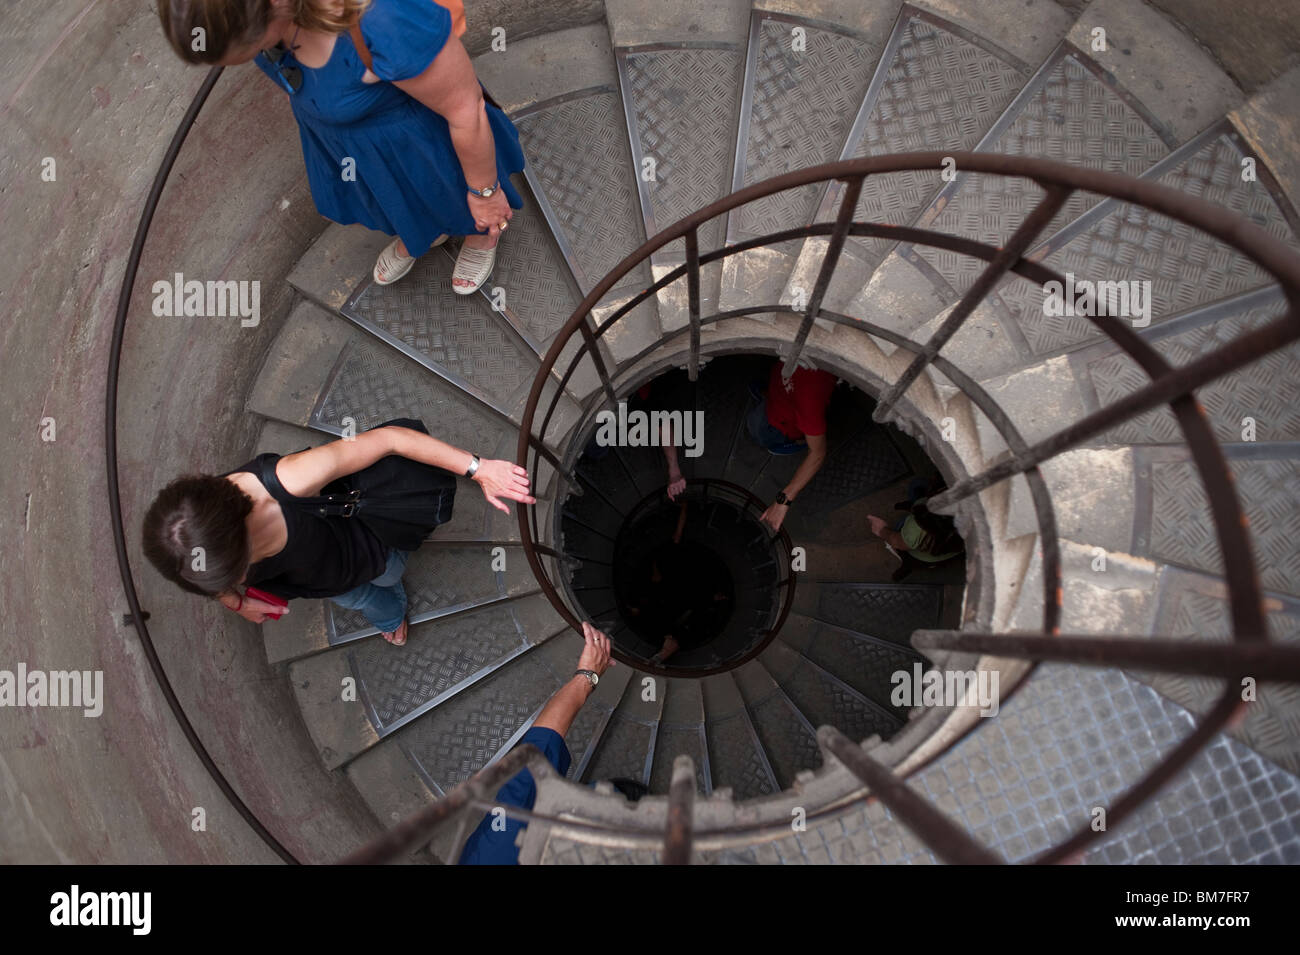 Scala a chiocciola, all'interno dell'Arco di Trionfo, Monumenti francesi, Parigi, Francia, scale persone a piedi Foto Stock